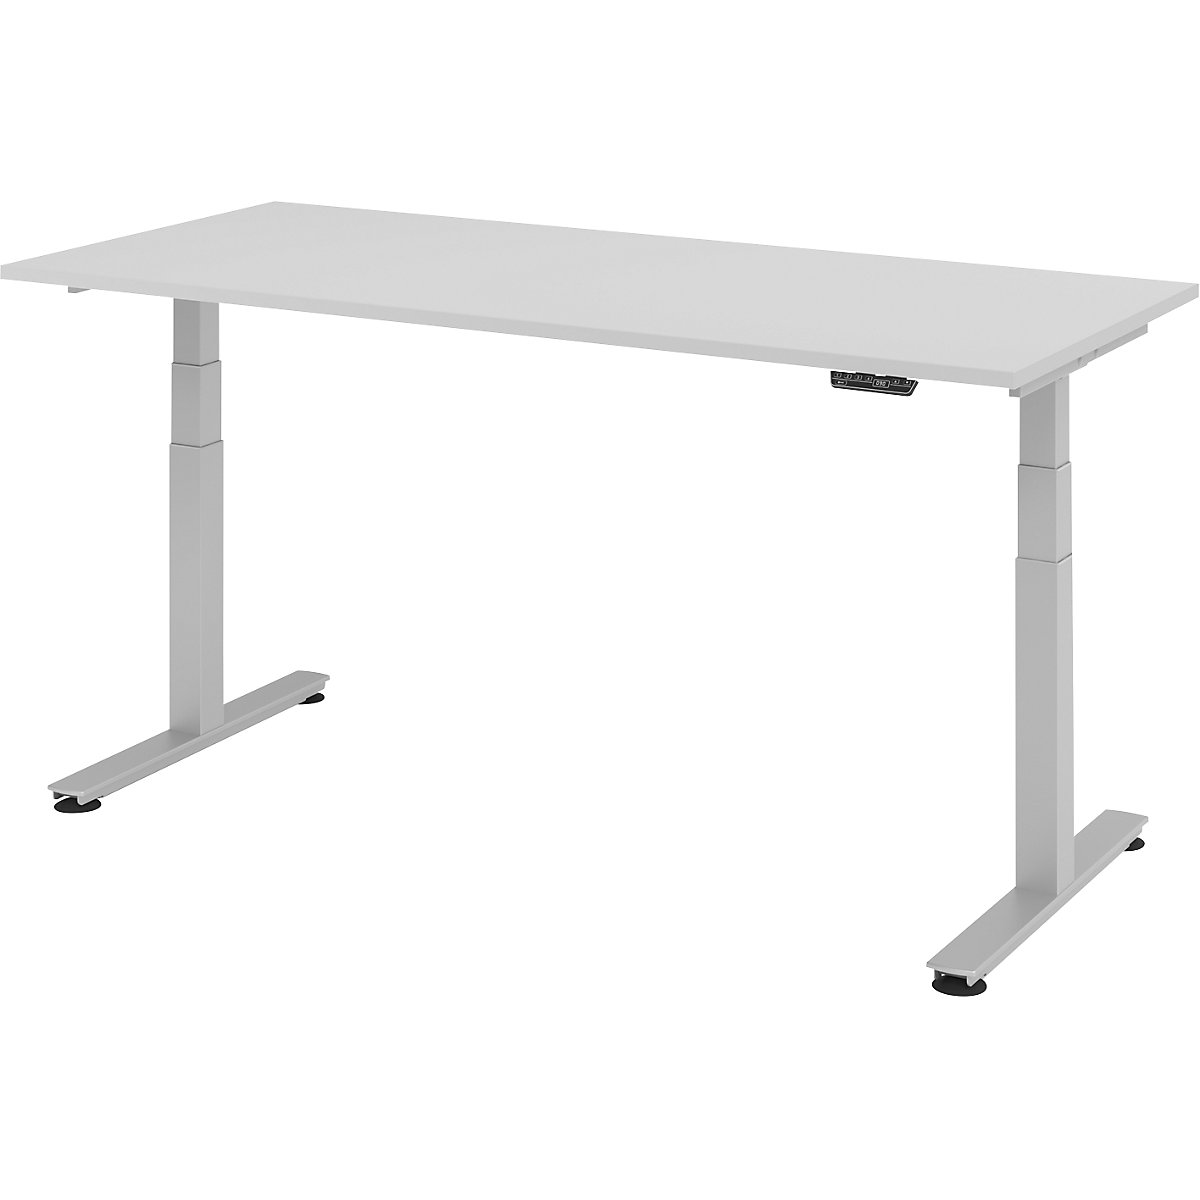 Psací stůl pro práci vestoje, s elektrickým přestavováním výšky UPLINER-2.0, podstavec s nohami ve tvaru T, šířka 1200 mm, světle šedá-21